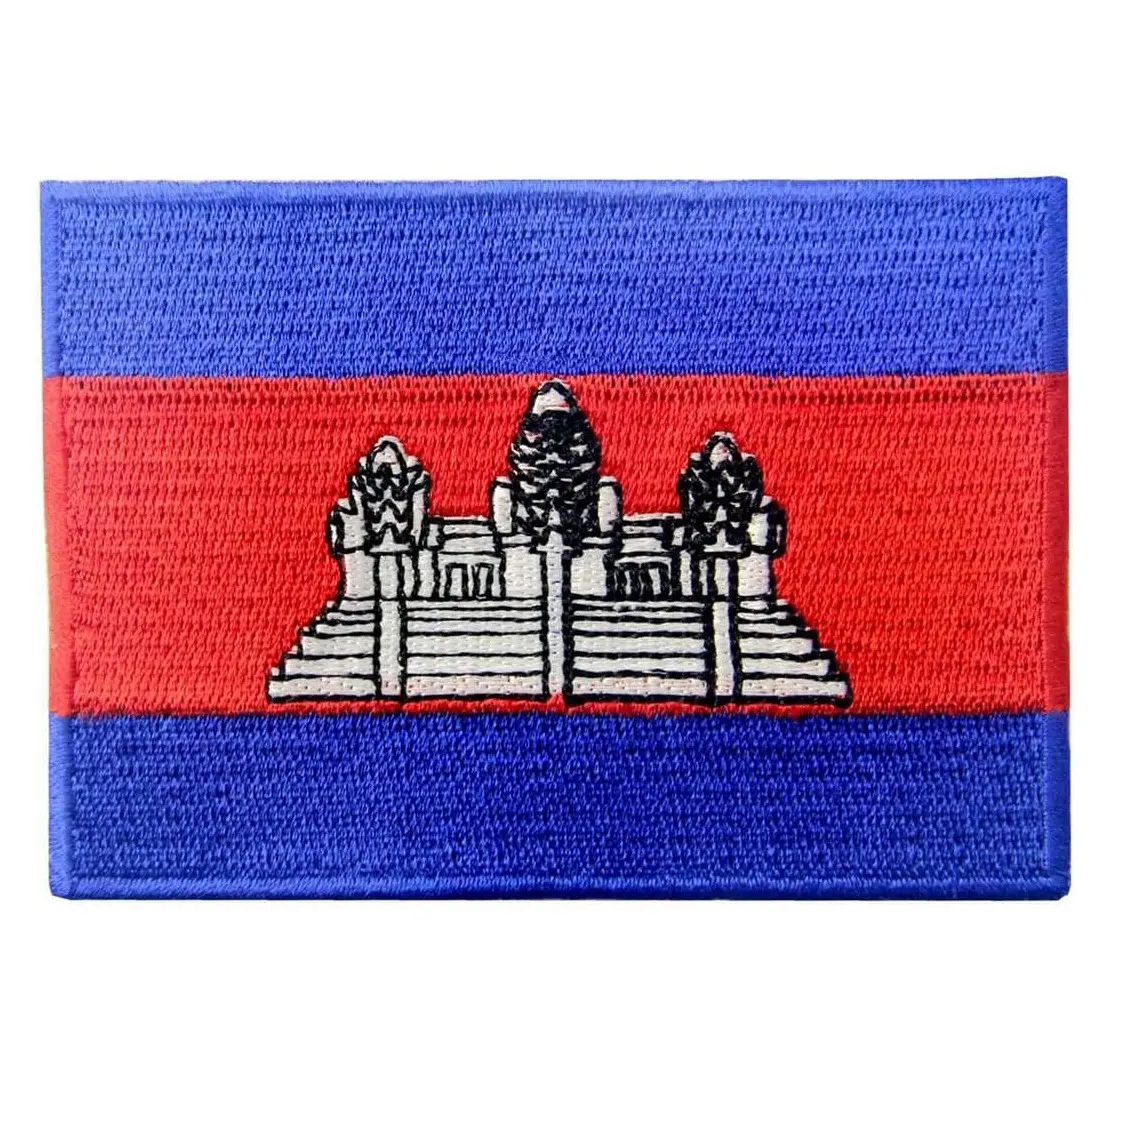 แผ่นผ้าปักลายธงแคมโบเดียนสีกากีประจำชาติปักบนสัญลักษณ์